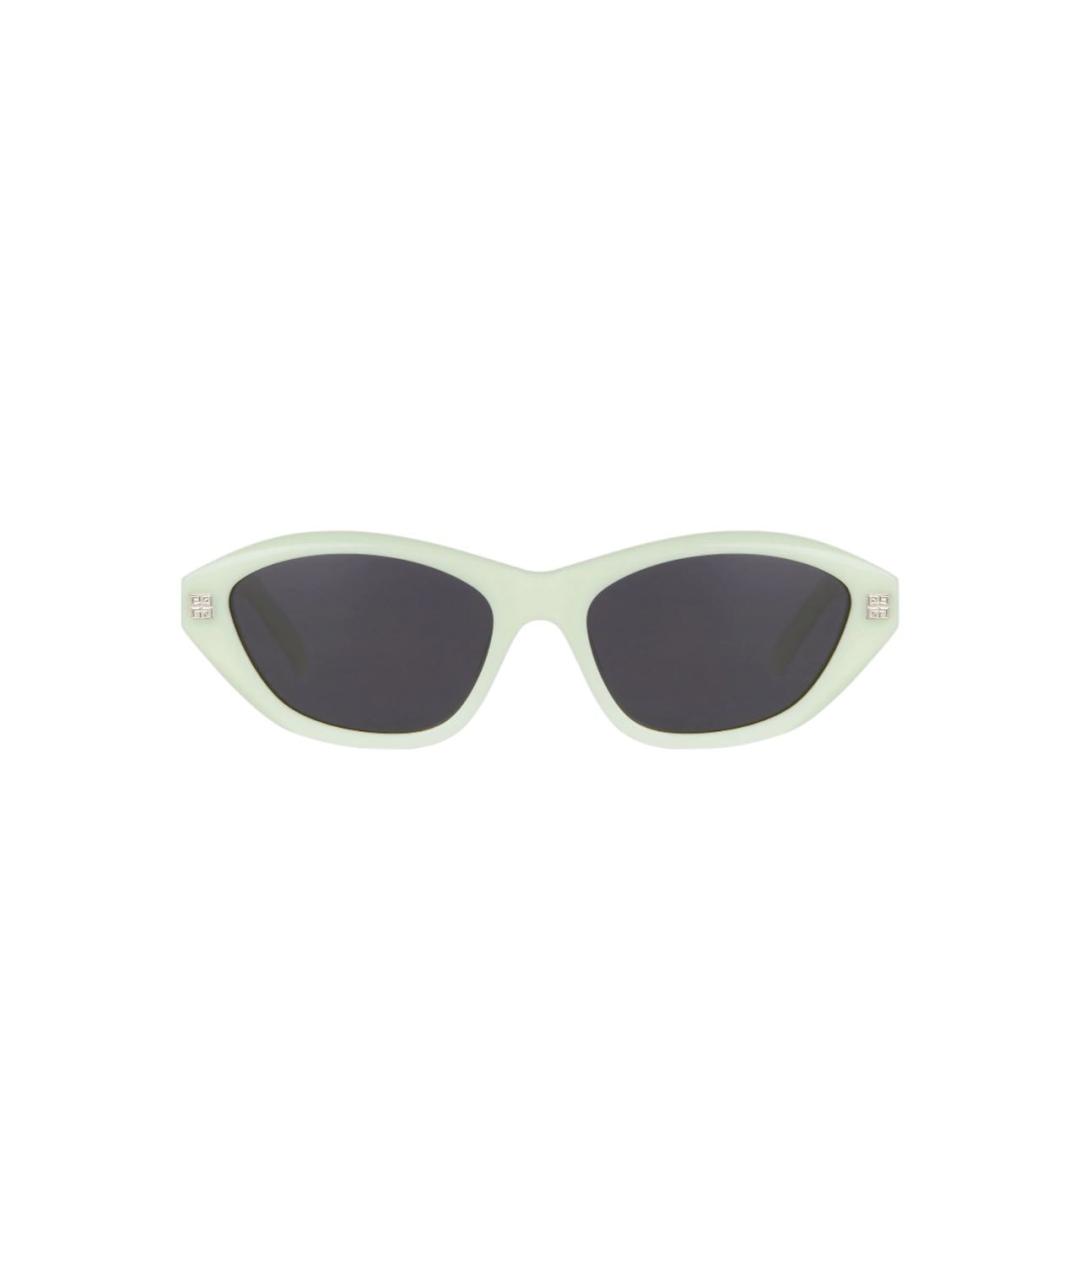 GIVENCHY Салатовые пластиковые солнцезащитные очки, фото 1